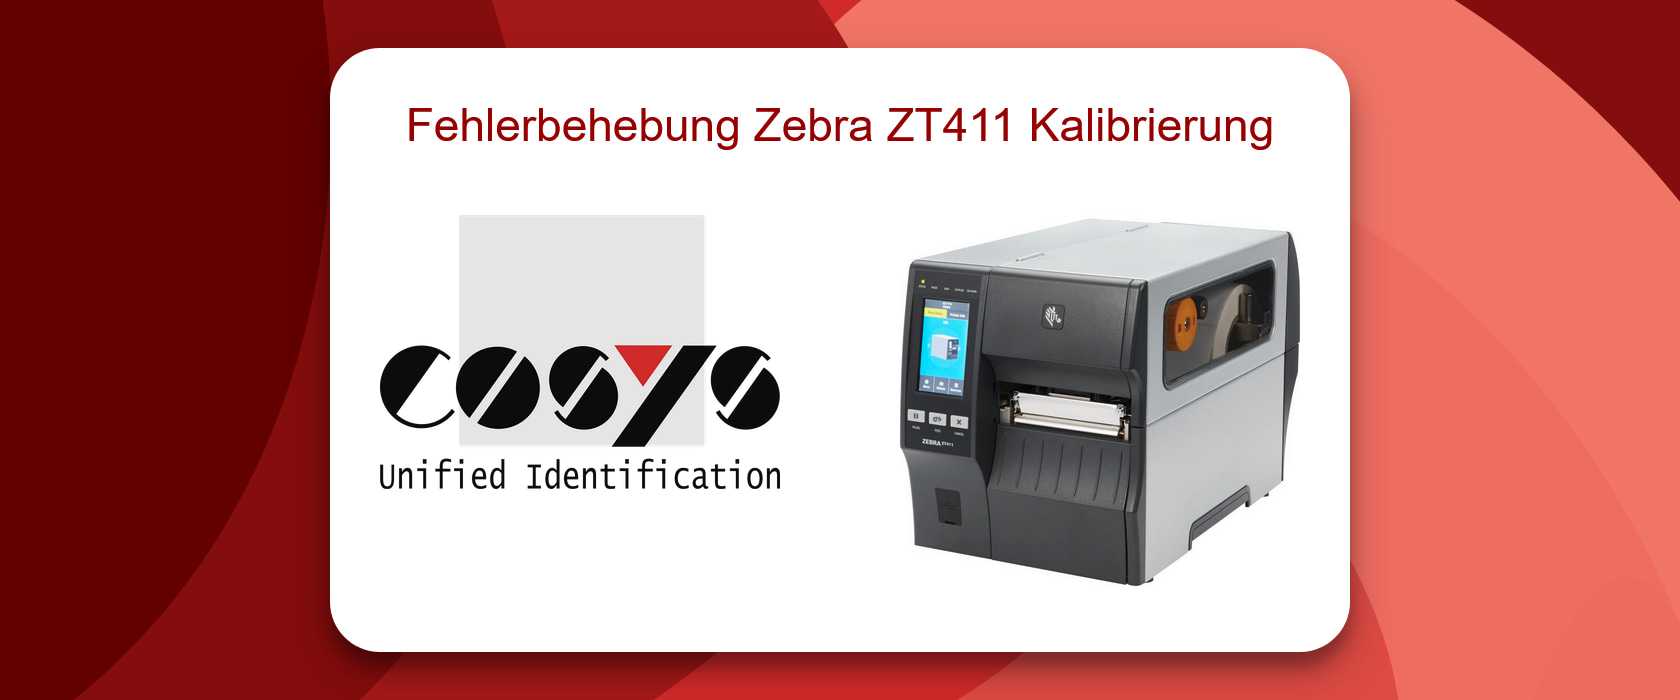 Zebra ZT411 Kalibrierung